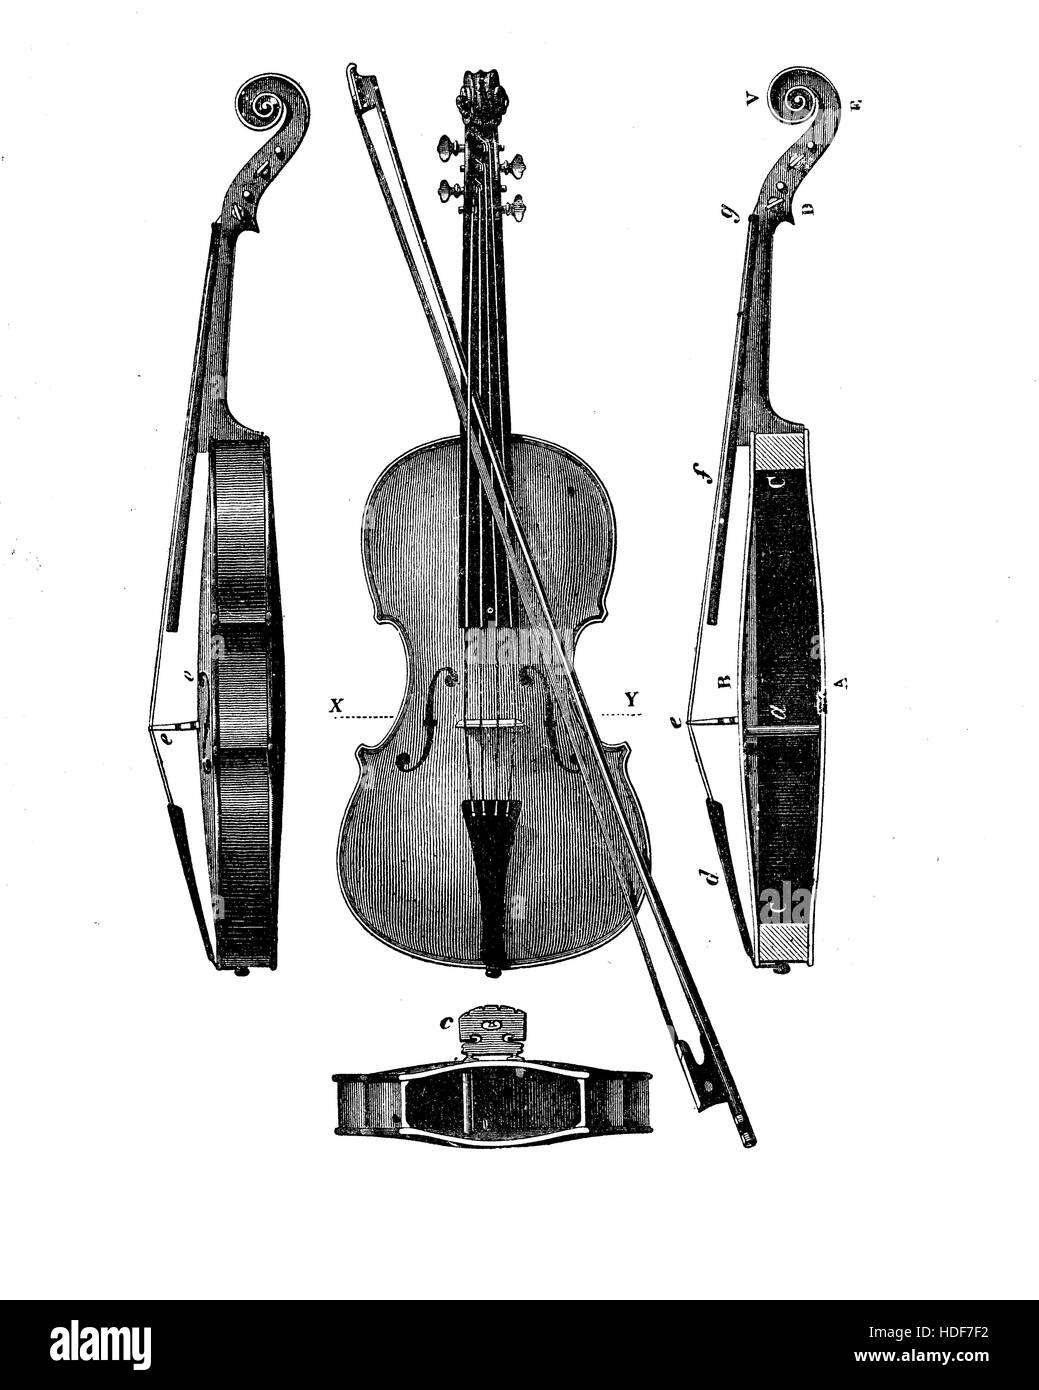 Jahrgang, Gravur, beschreibt das Konstruktionsdetail einer Violine aus unterschiedlichen Perspektiven Stockfoto